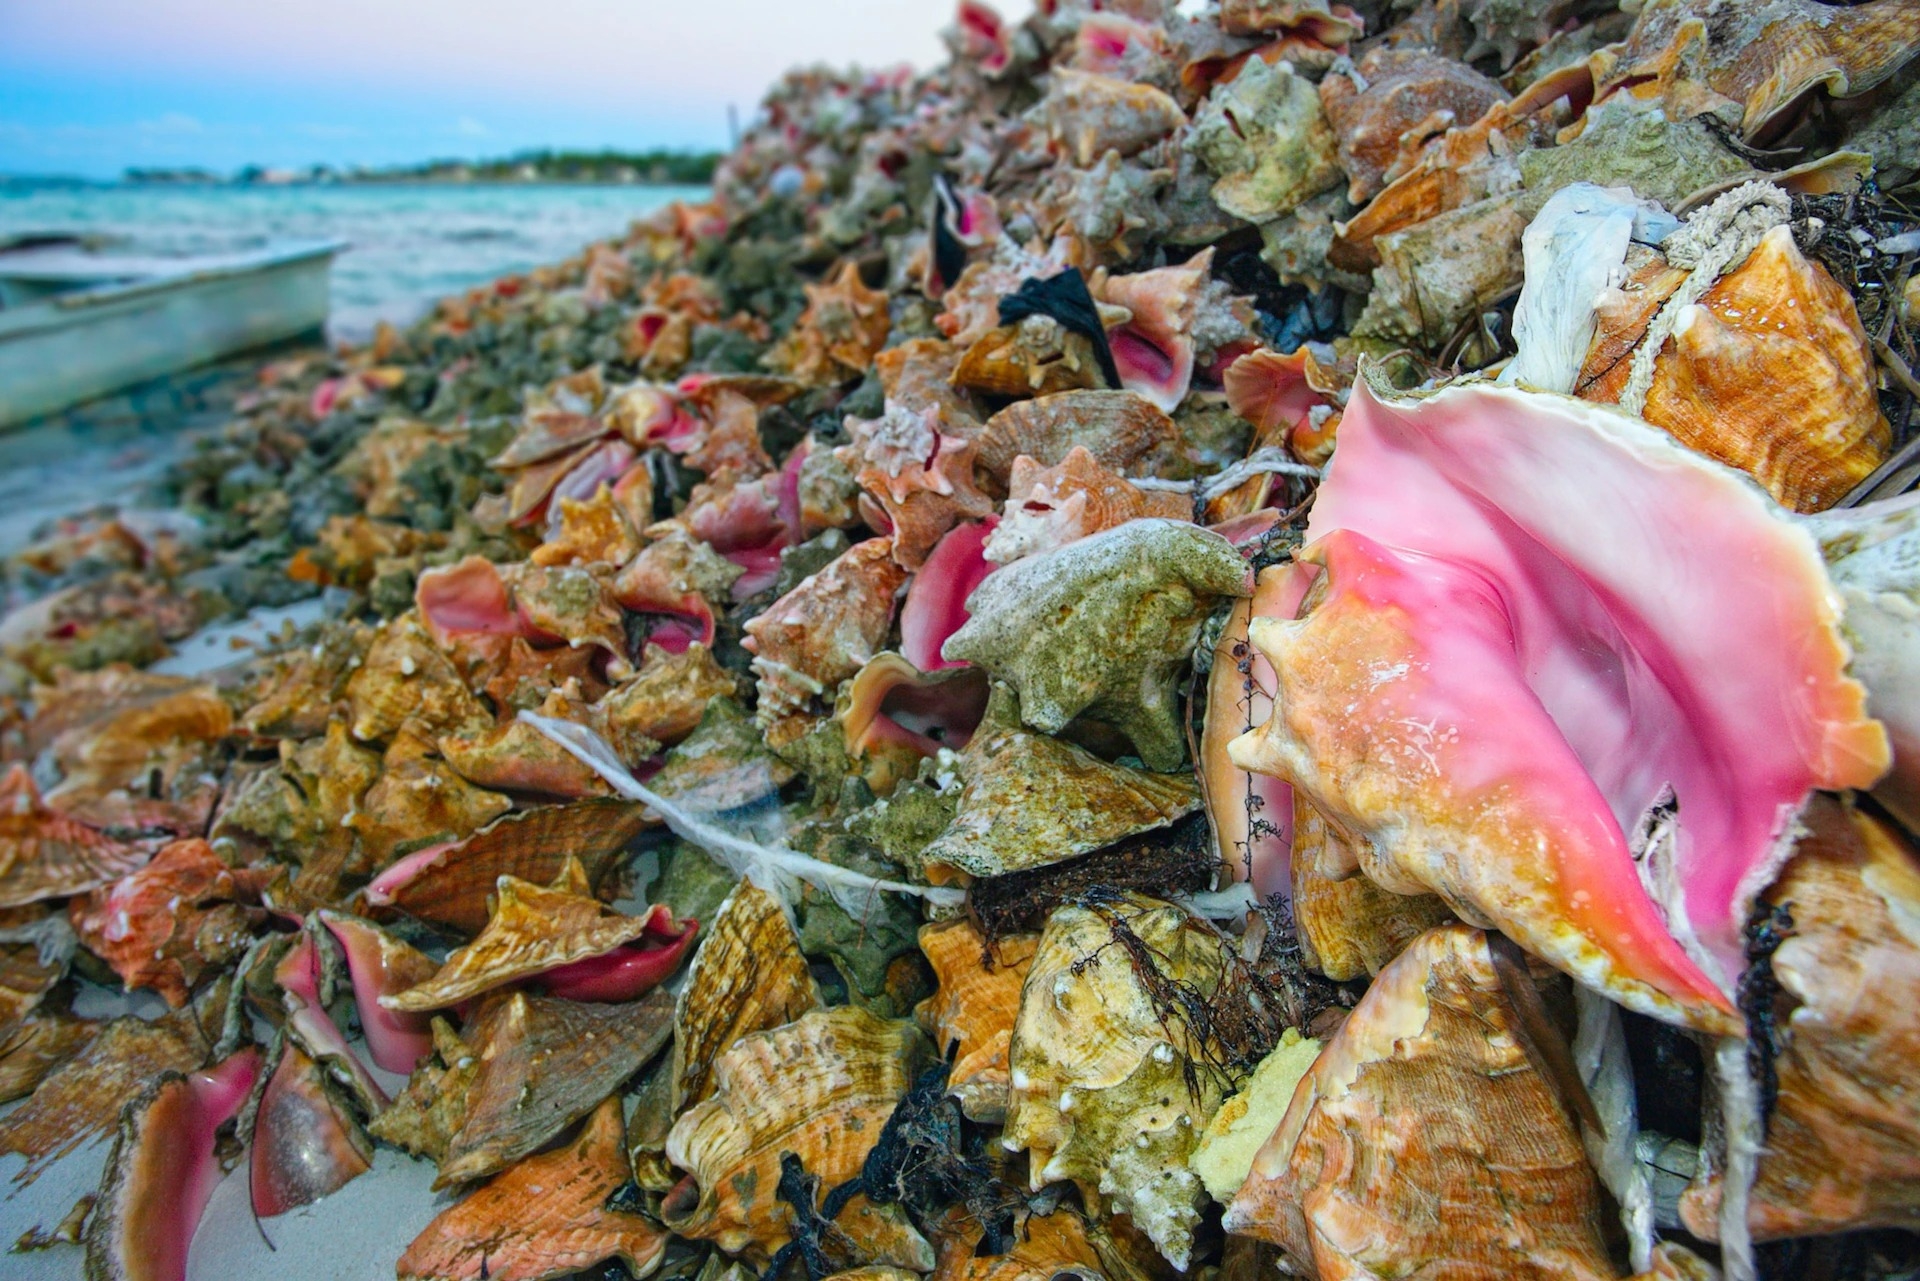 人們把鳳凰螺肉取出來烹食後就將其空殼丟棄，散落在巴哈馬的一處海灘上。鳳凰螺在巴哈馬是一道備受喜愛的菜，也是重要的出口商品。PHOTOGRAPH BY NATHAN DERRICK, GETTY IMAGES 